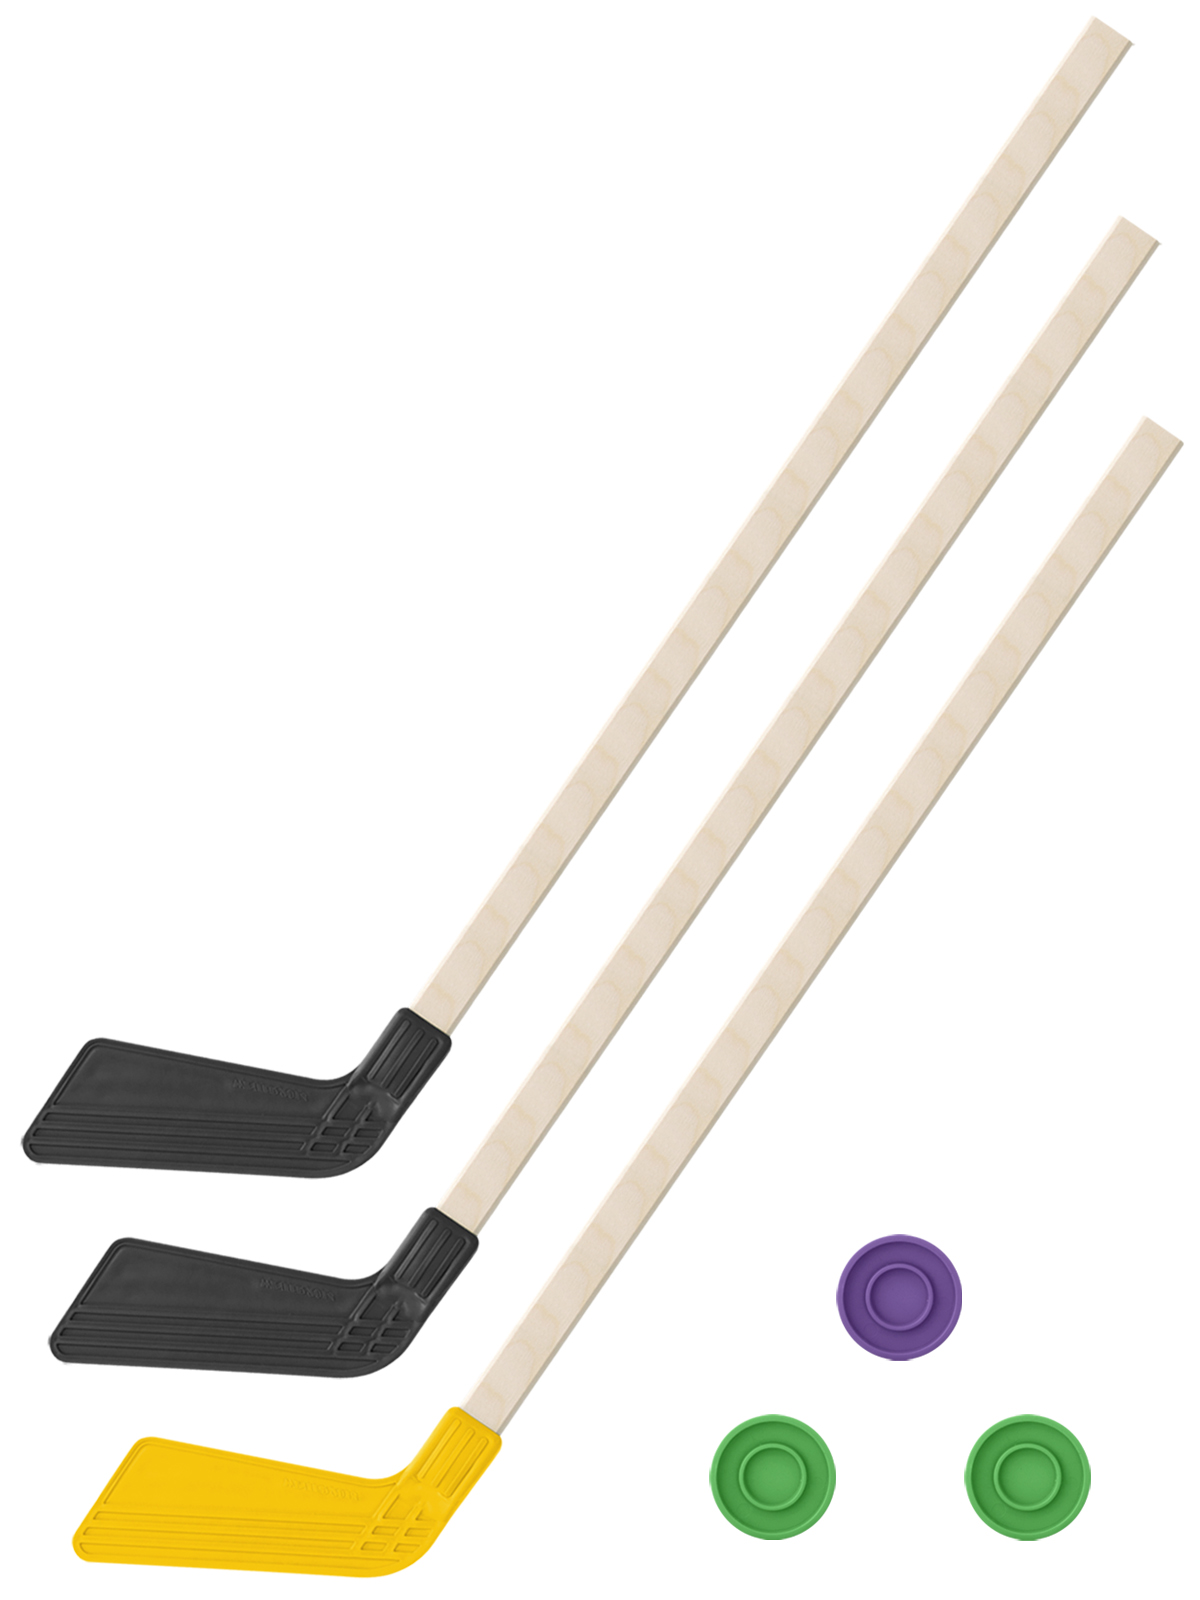 Детский хоккейный набор Задира-плюс 3 в 1 Клюшка хоккейная 80 см (2черн, 1жел) + 3 шайбы детский хоккейный набор задира плюс 3 в 1 клюшка хоккейная 80 см син чёрн жел 3 шайбы